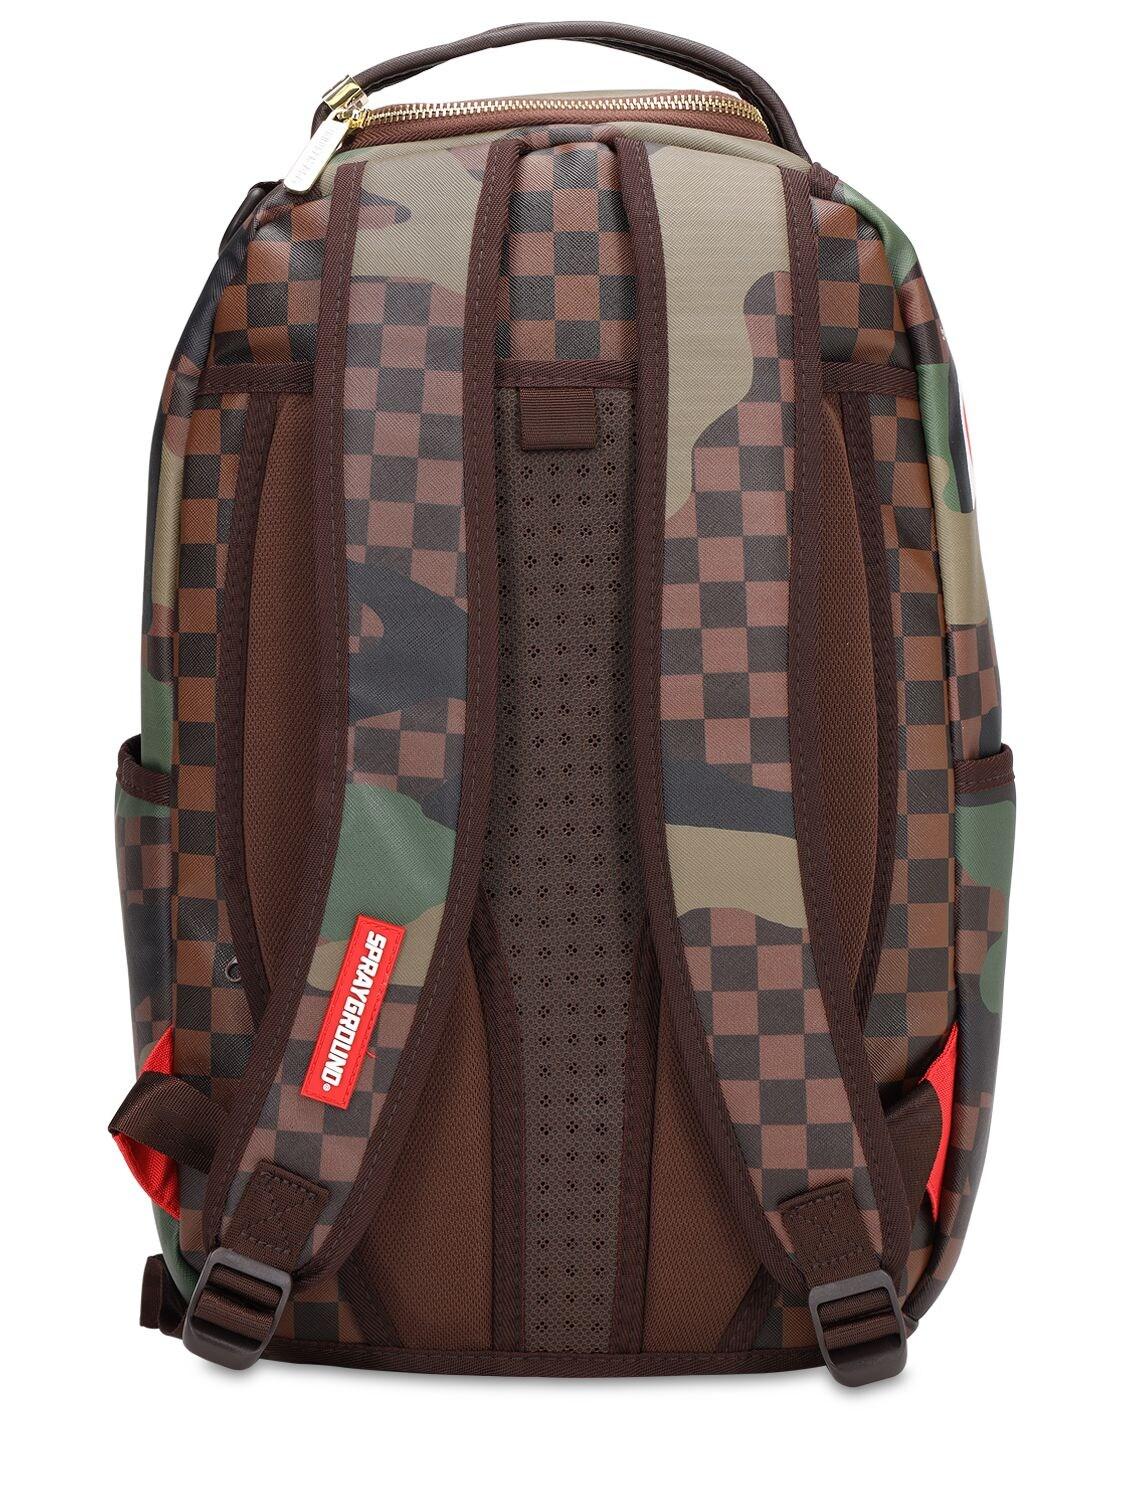 Sprayground Checkered Camo Shark Pvc Backpack for Men - Lyst